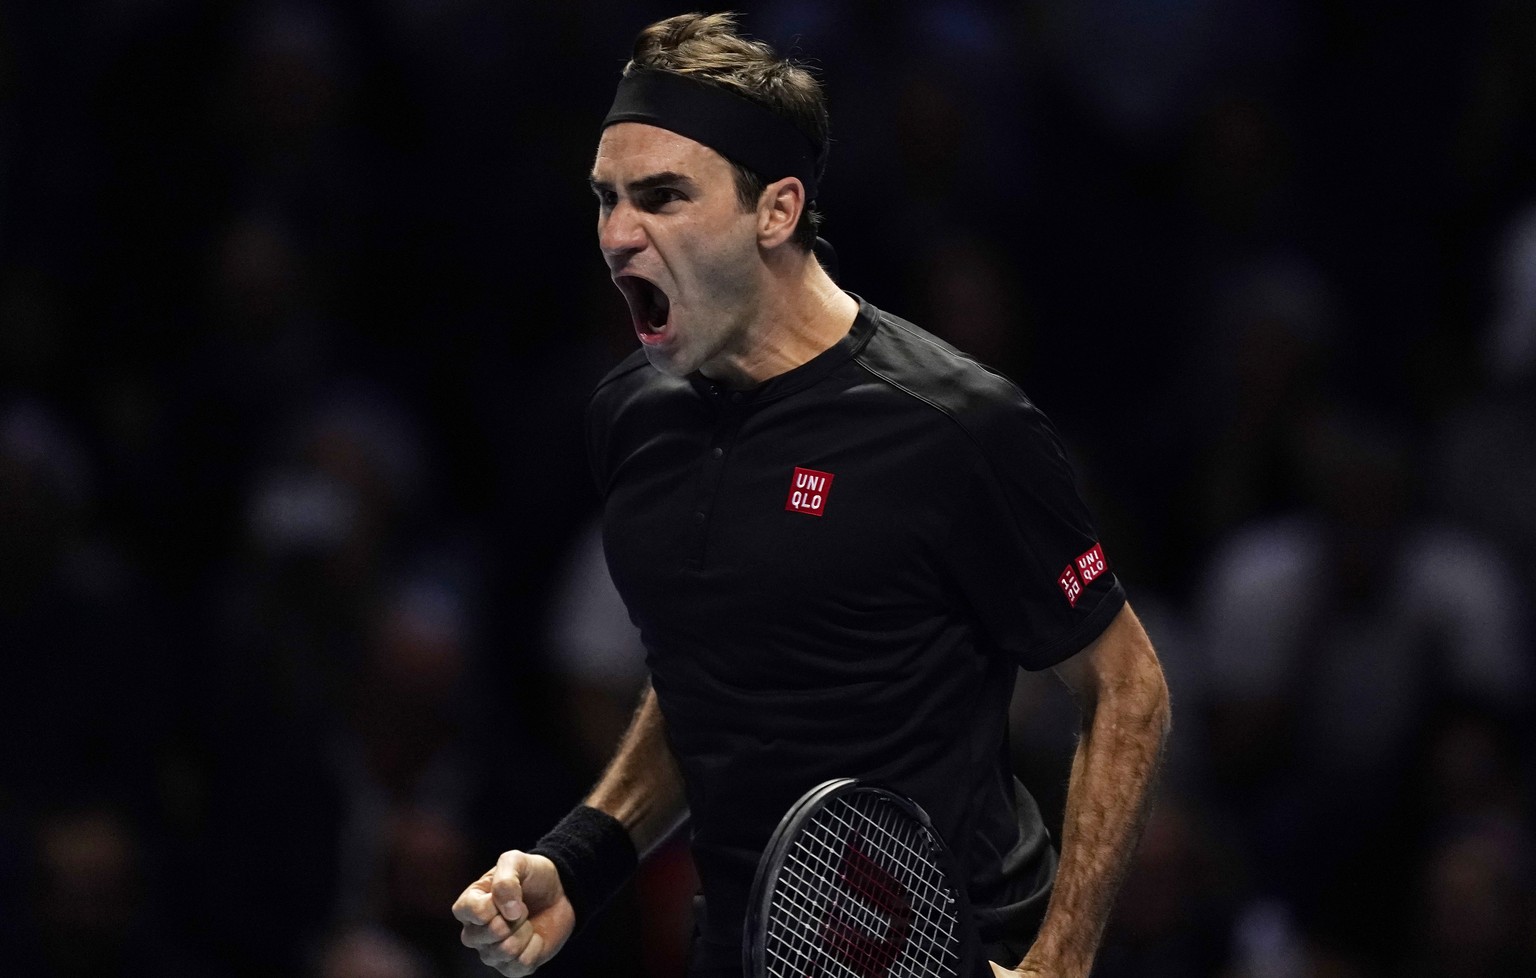 Nach dem Sieg über Djokovic brüllt Federer seine Freude hinaus.